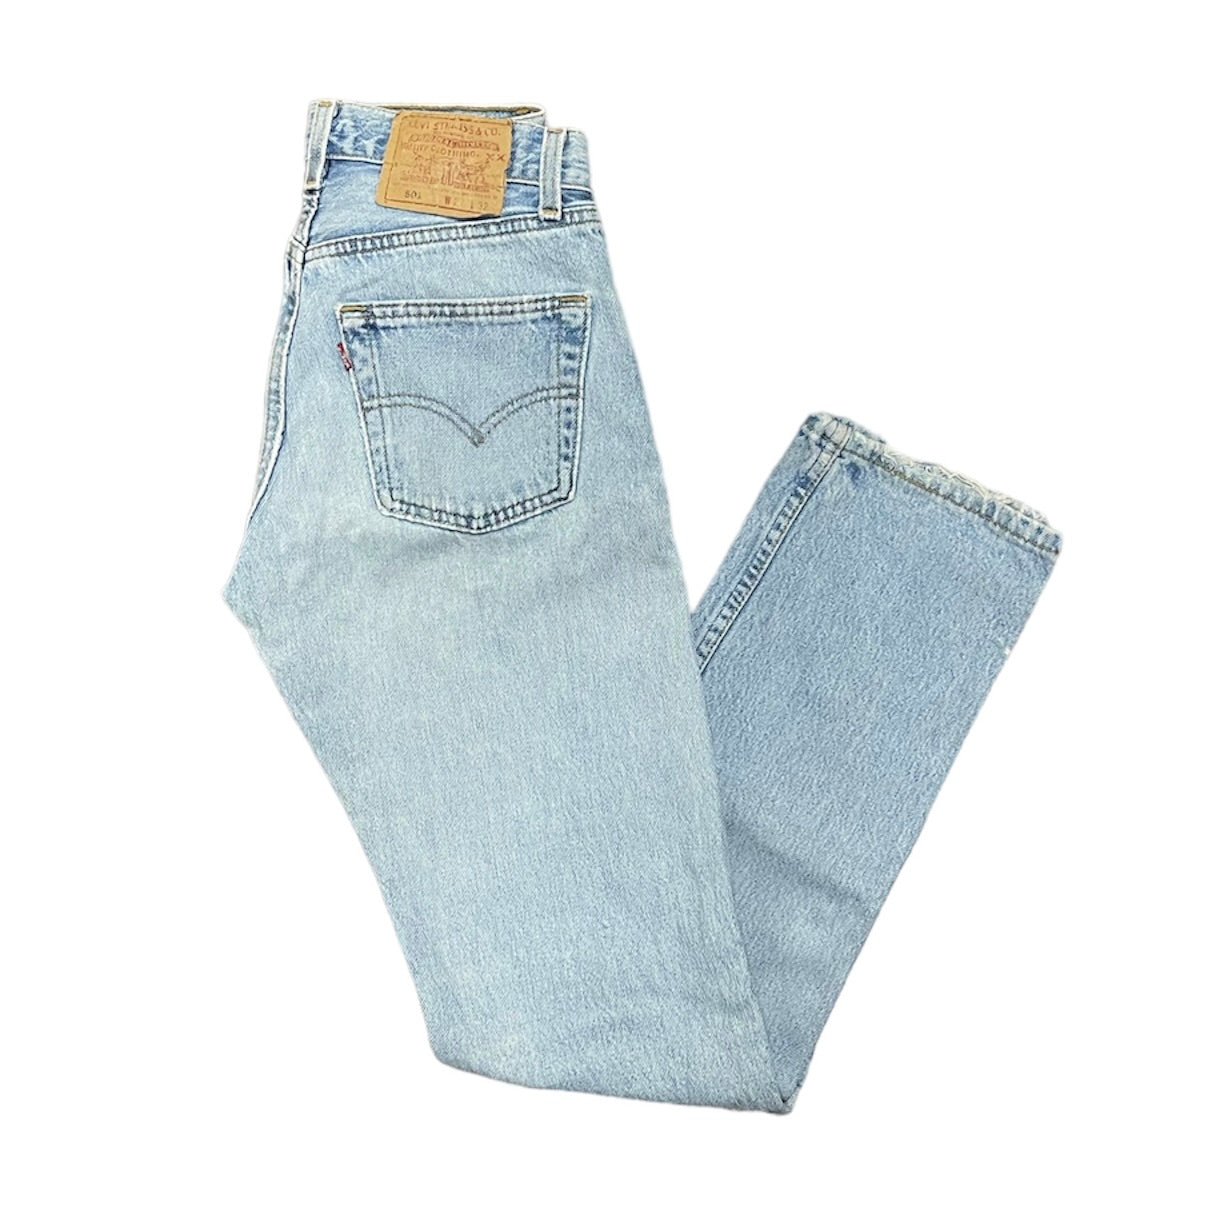 Vintage Levis 501 Light Blue Jeans (W27/L32)